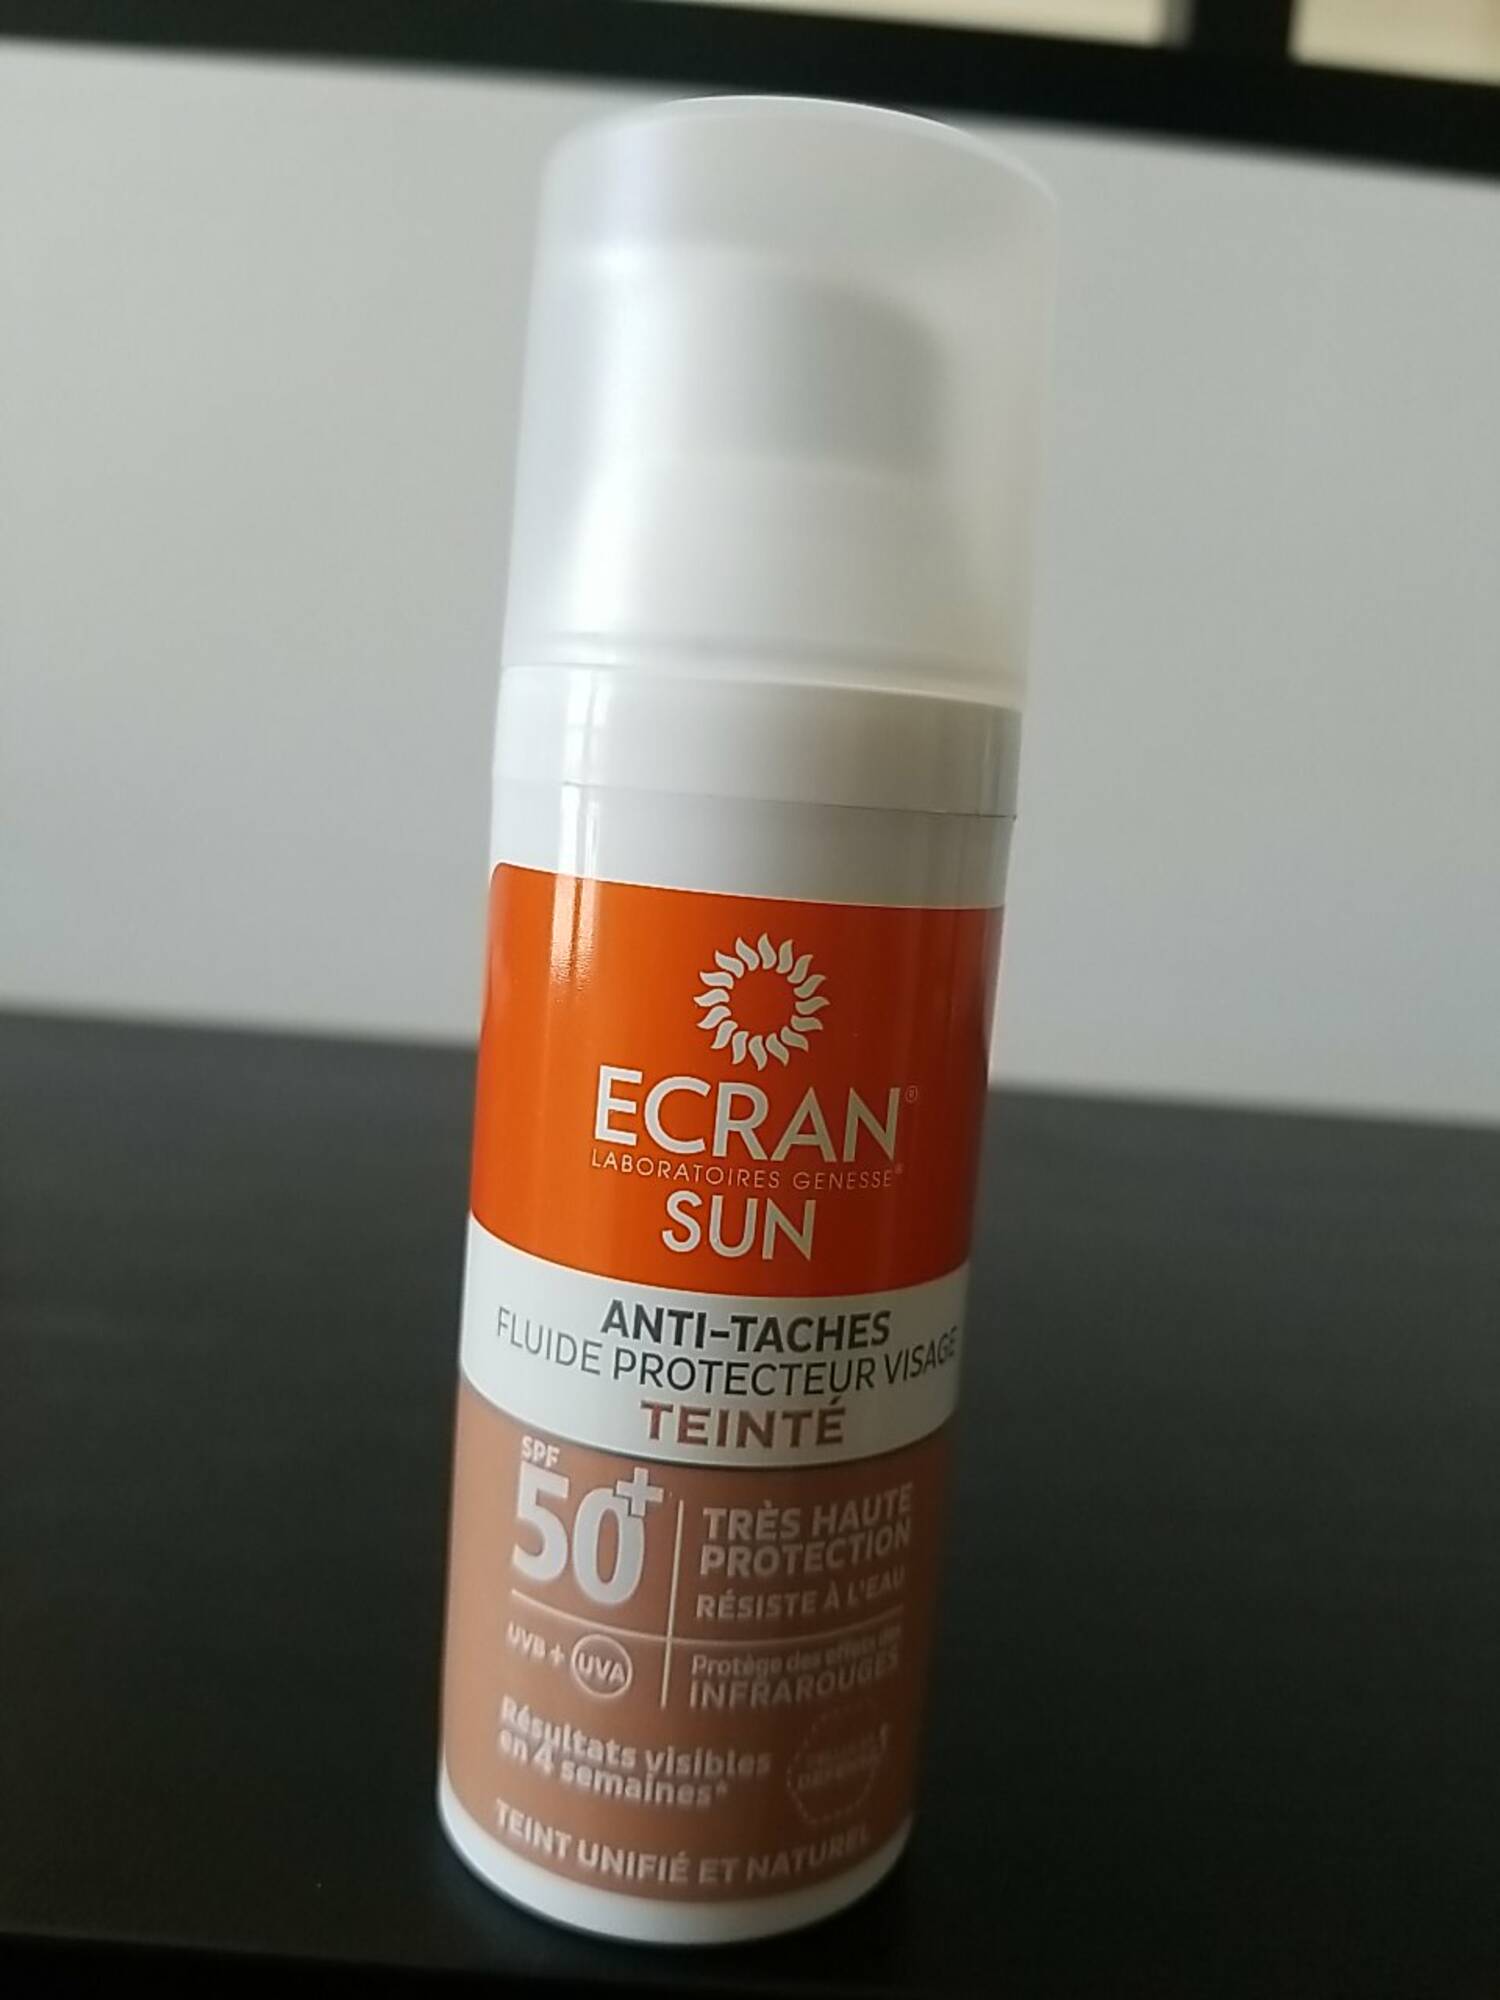 ECRAN - Sun anti-tâches - Fluide protecteur visage teinté SPF 50+